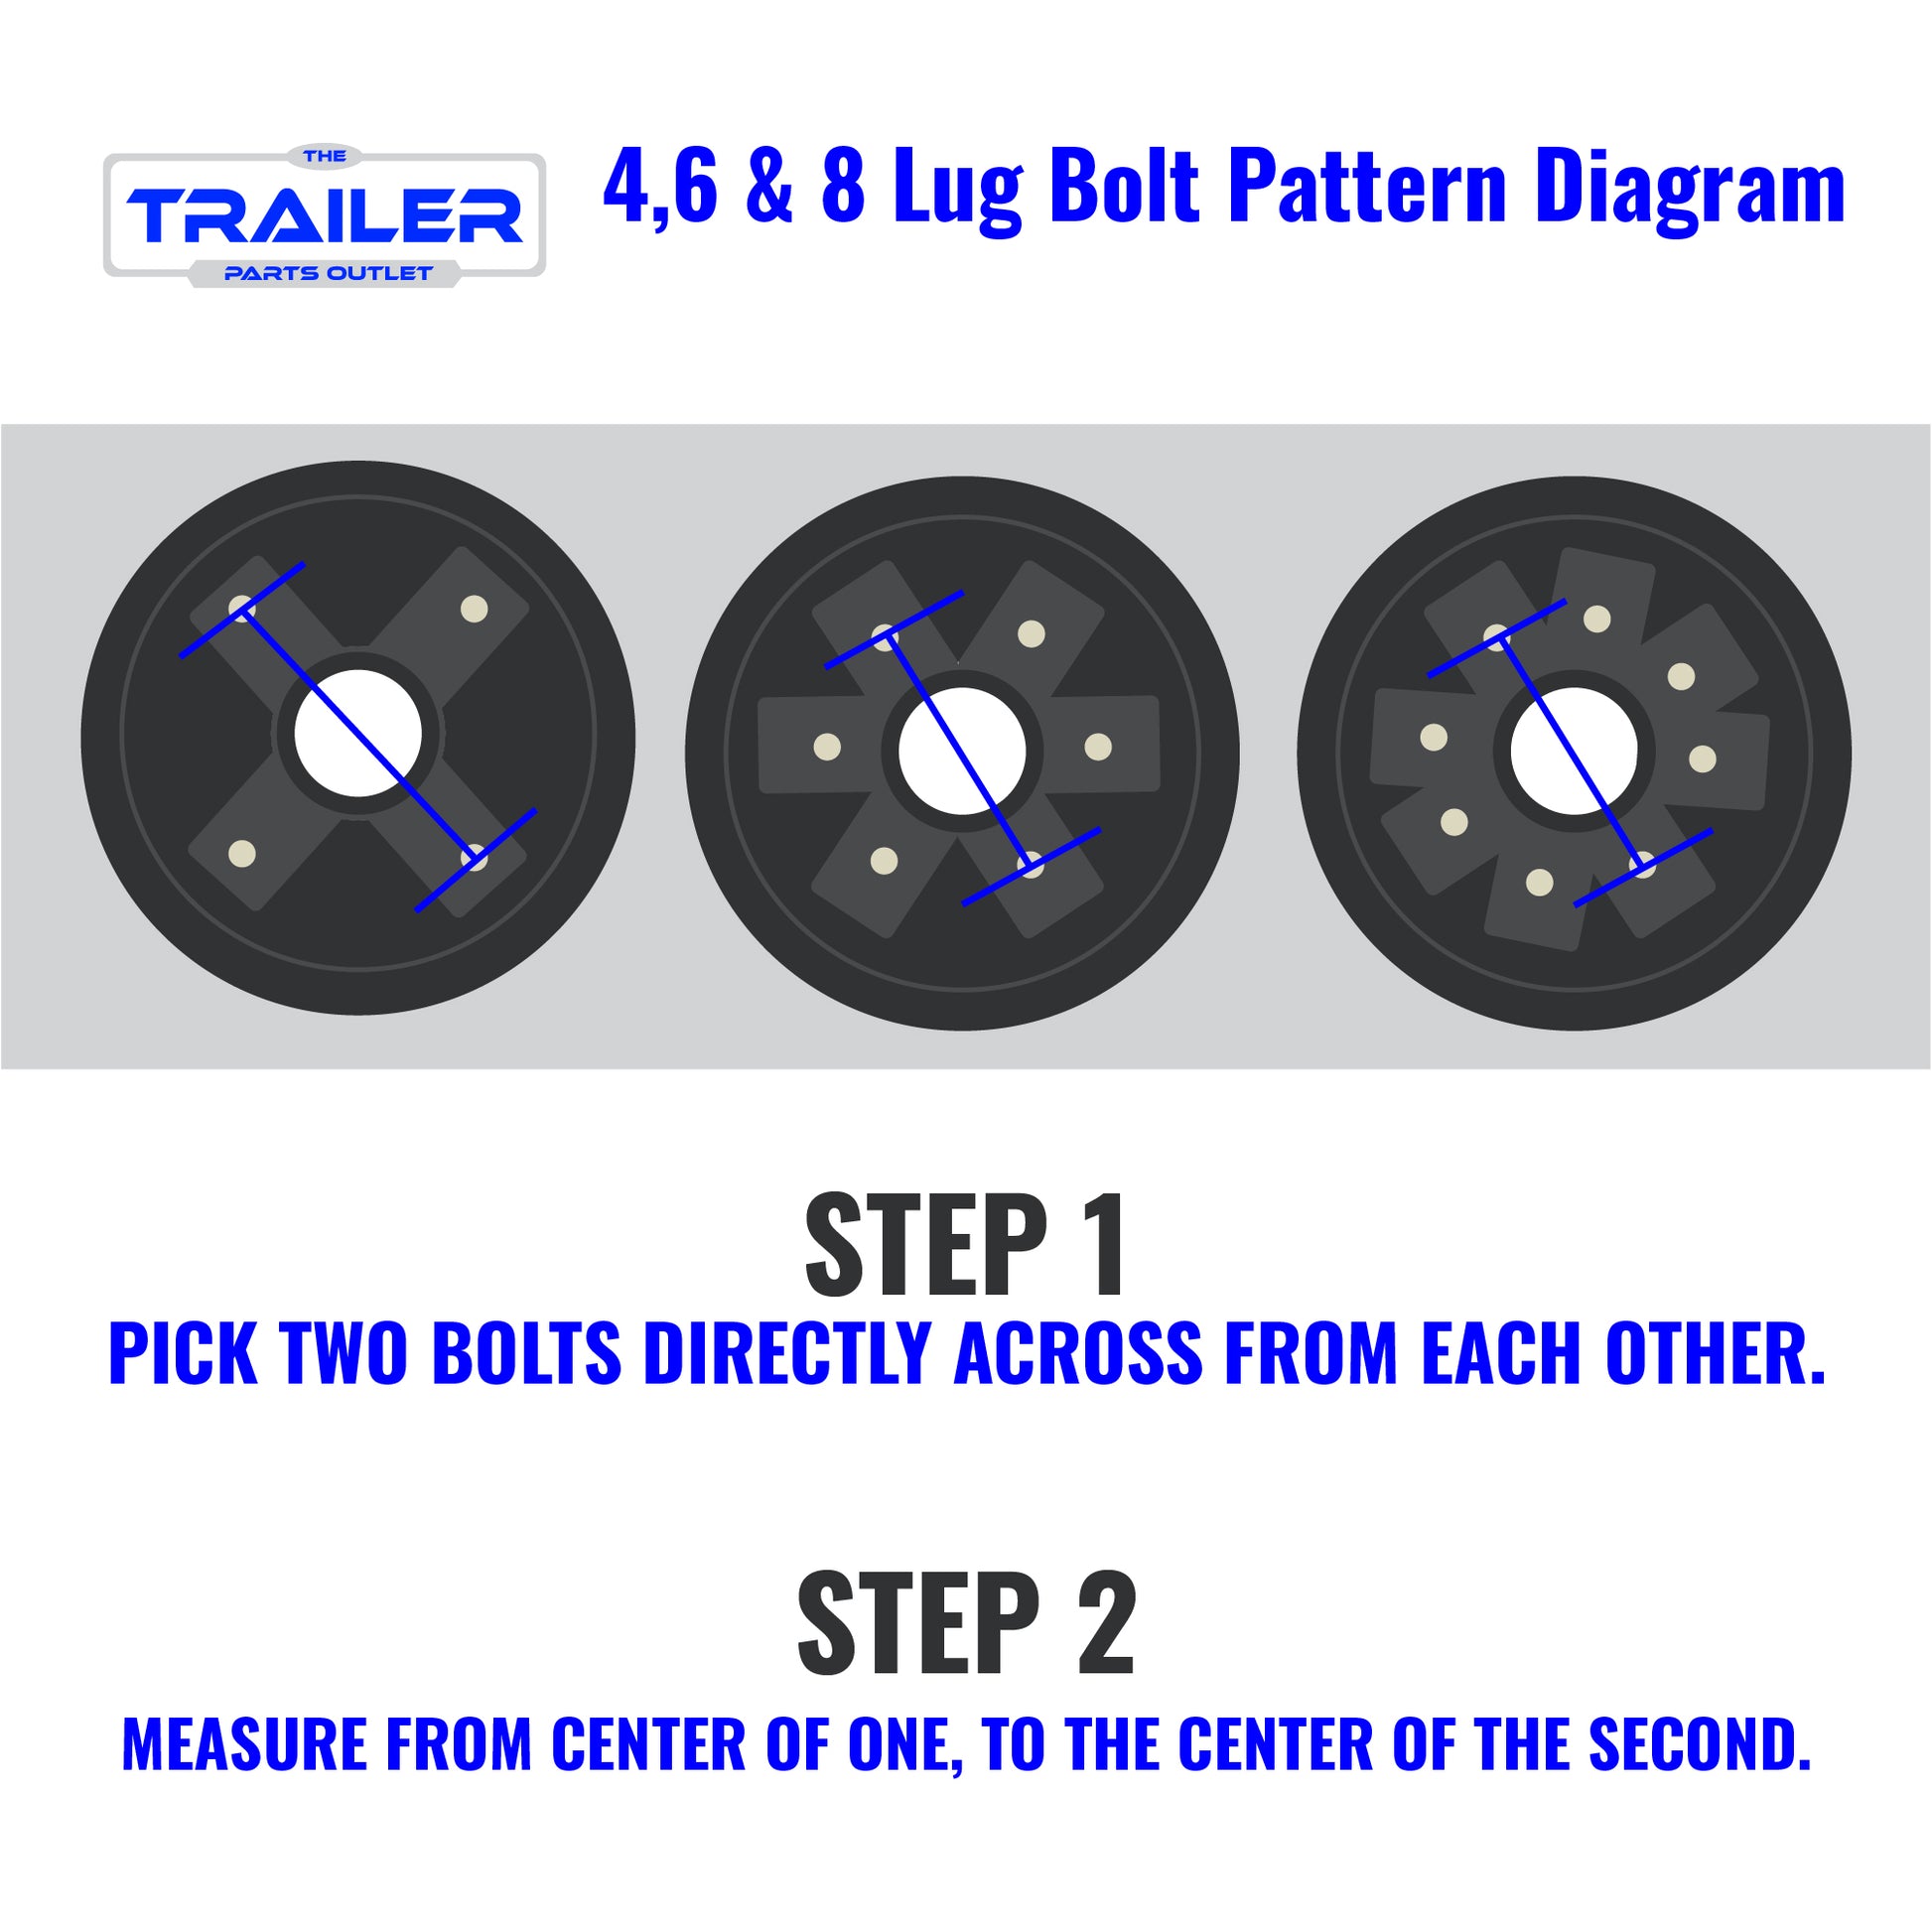 Bolt Pattern Diagram for 4,6 & 8 Lug 